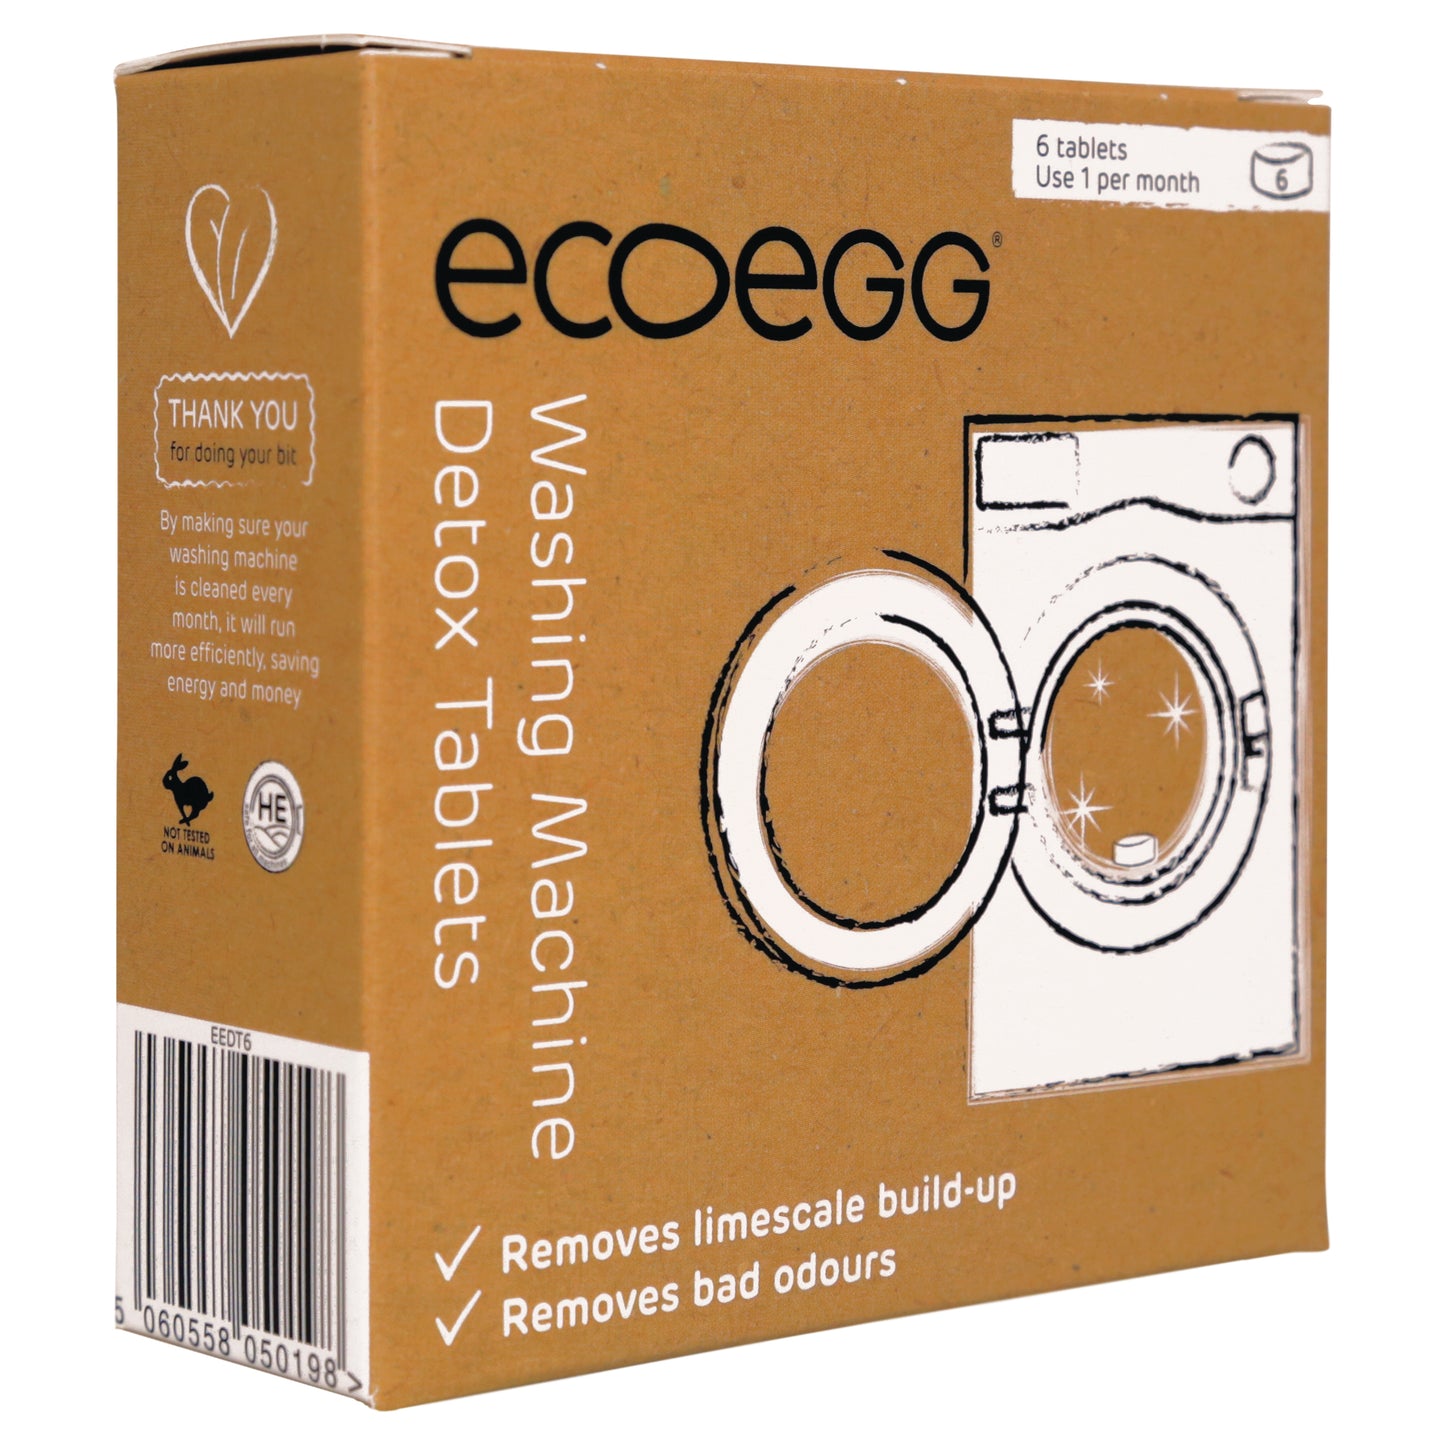 ECOEGG Detox Tablets - 6 Stück Reinigungstabletten für die Waschmaschine | umweltfreundlich | zero waste | vegan